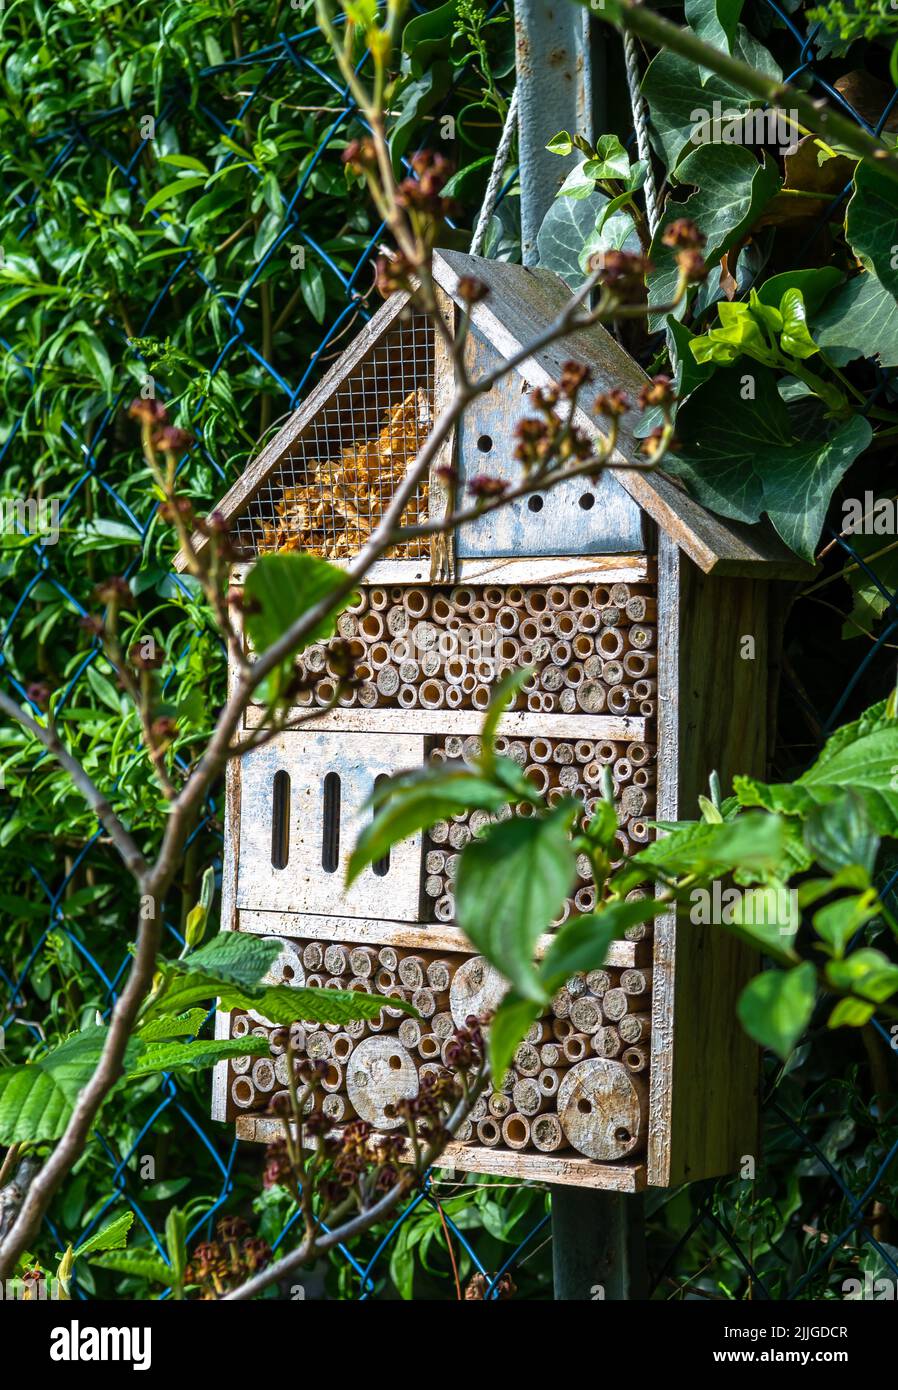 El hotel del insecto con muchos agujeros ocupados en jardín da la protección y ayuda de la anidación a las abejas y a otros insectos Foto de stock